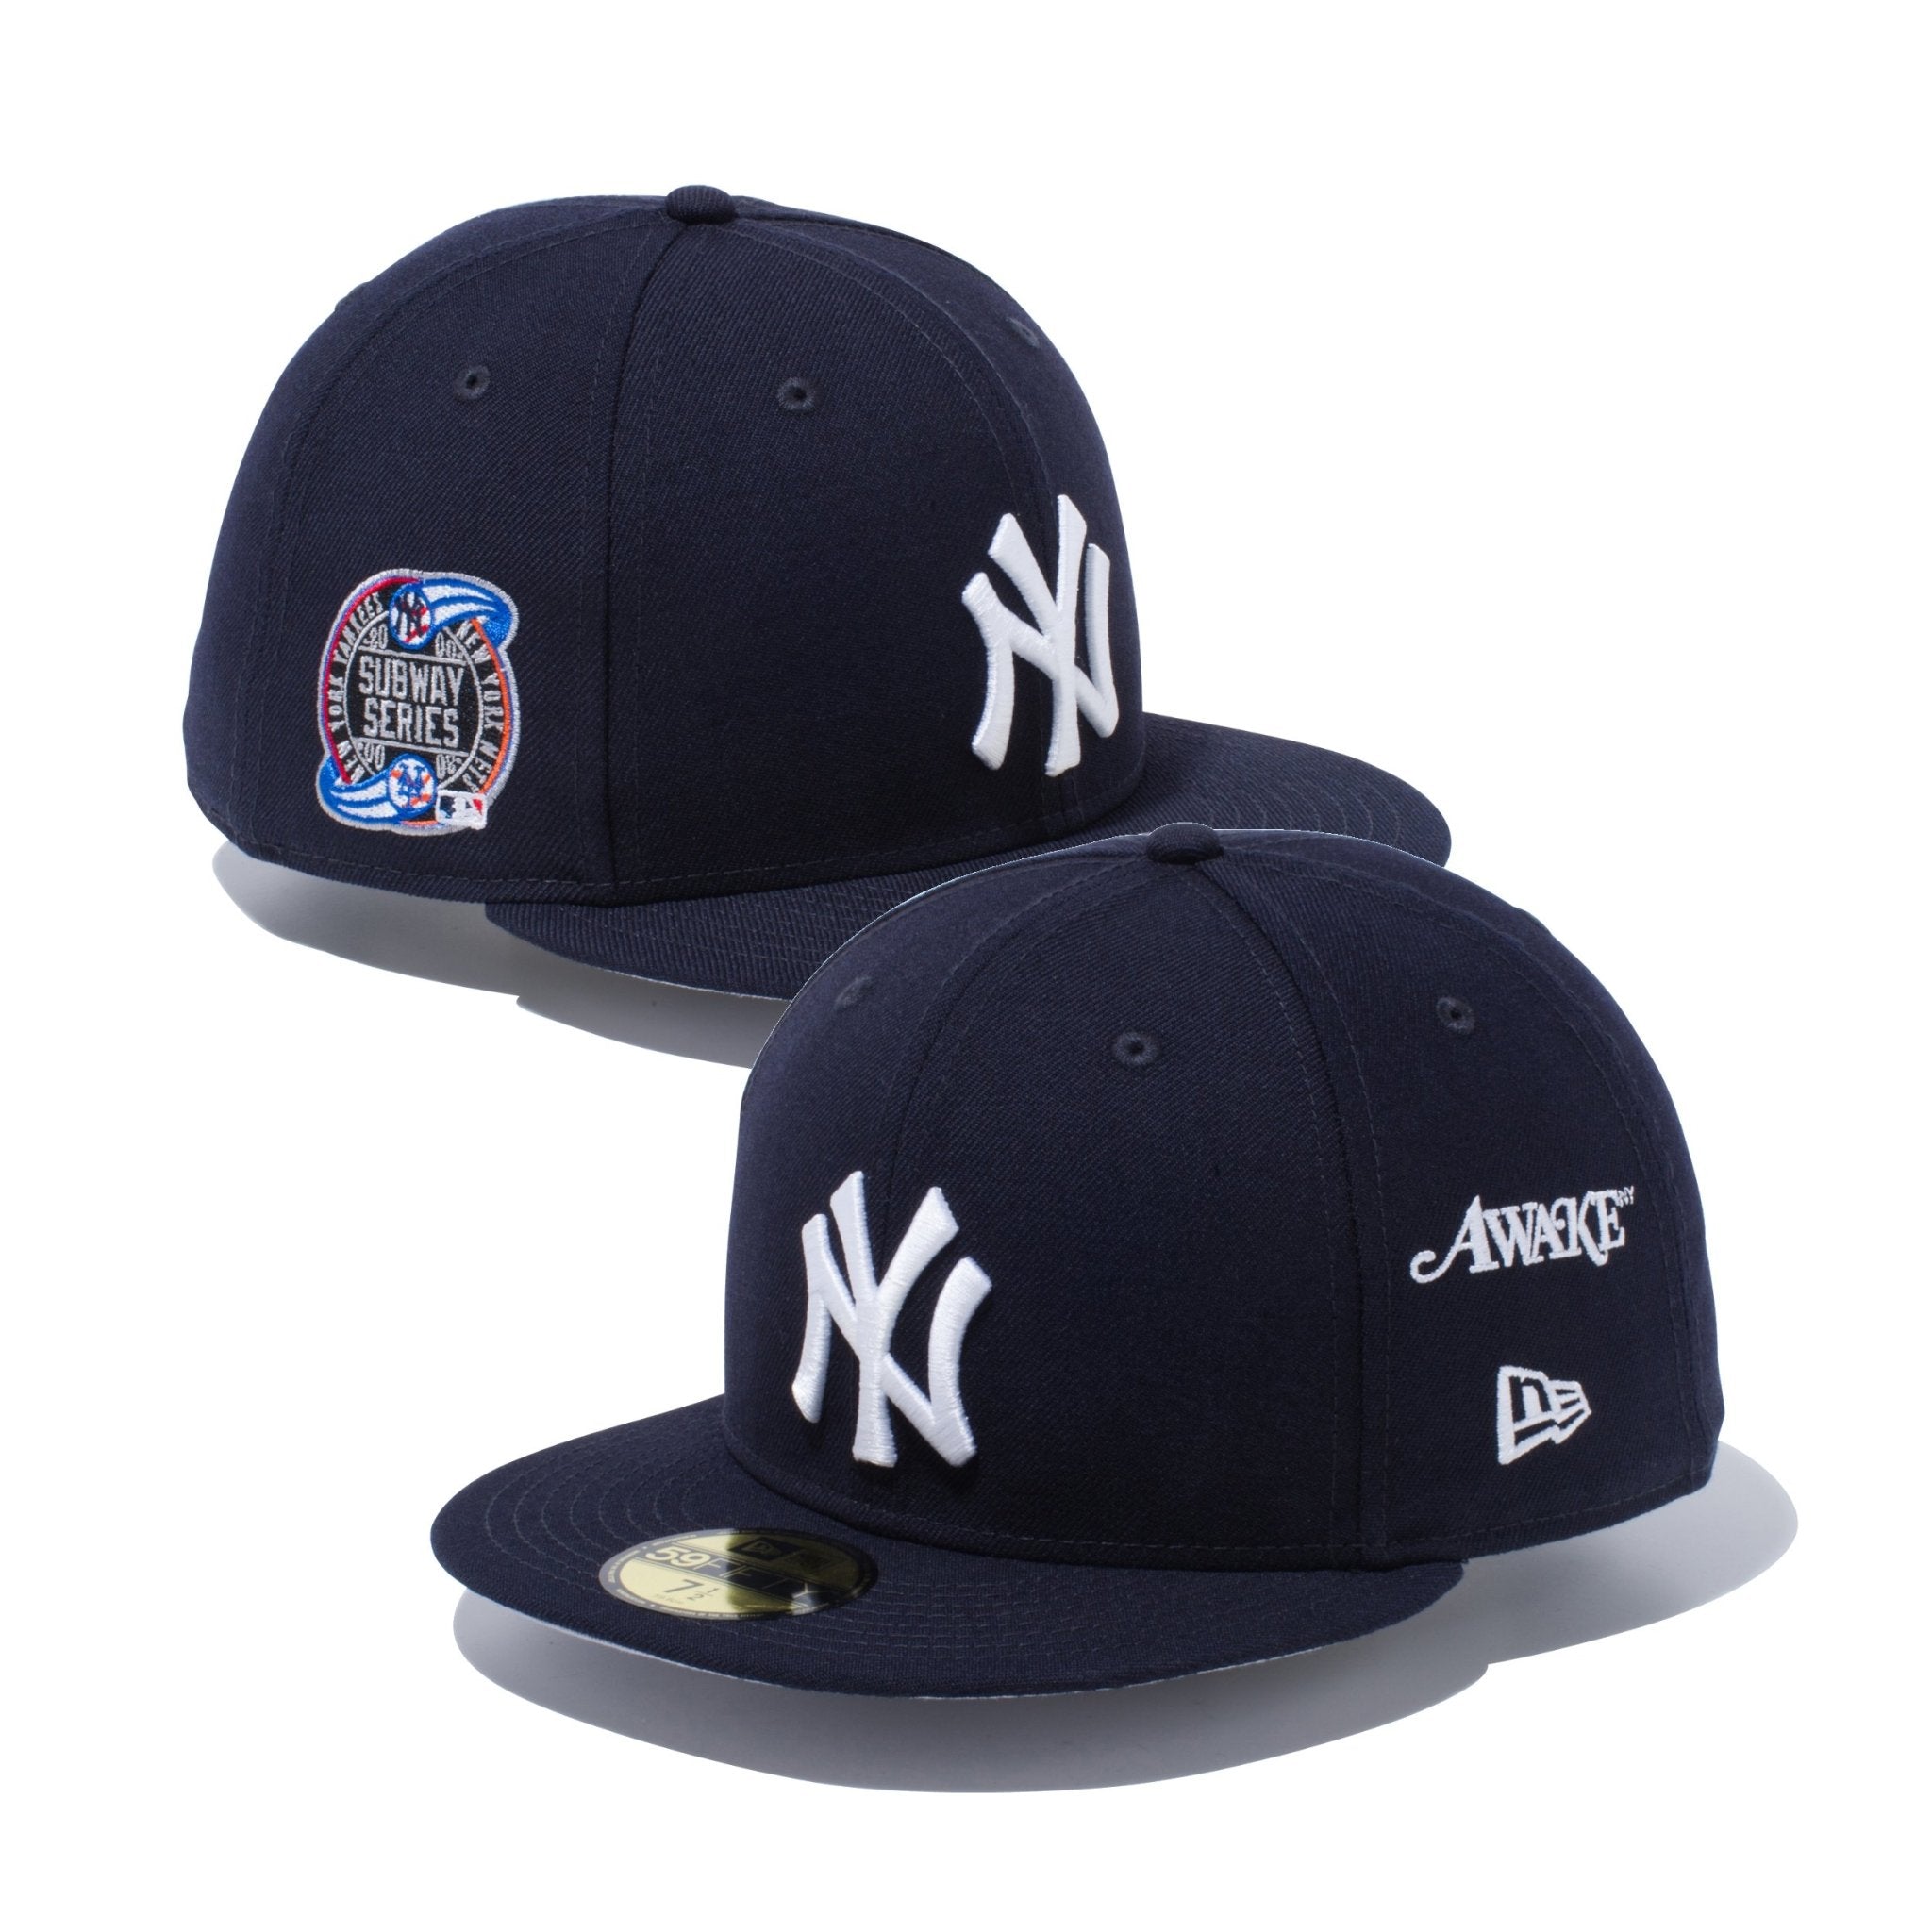 Awake NY New Era New York Yankees ニューエラ | hartwellspremium.com